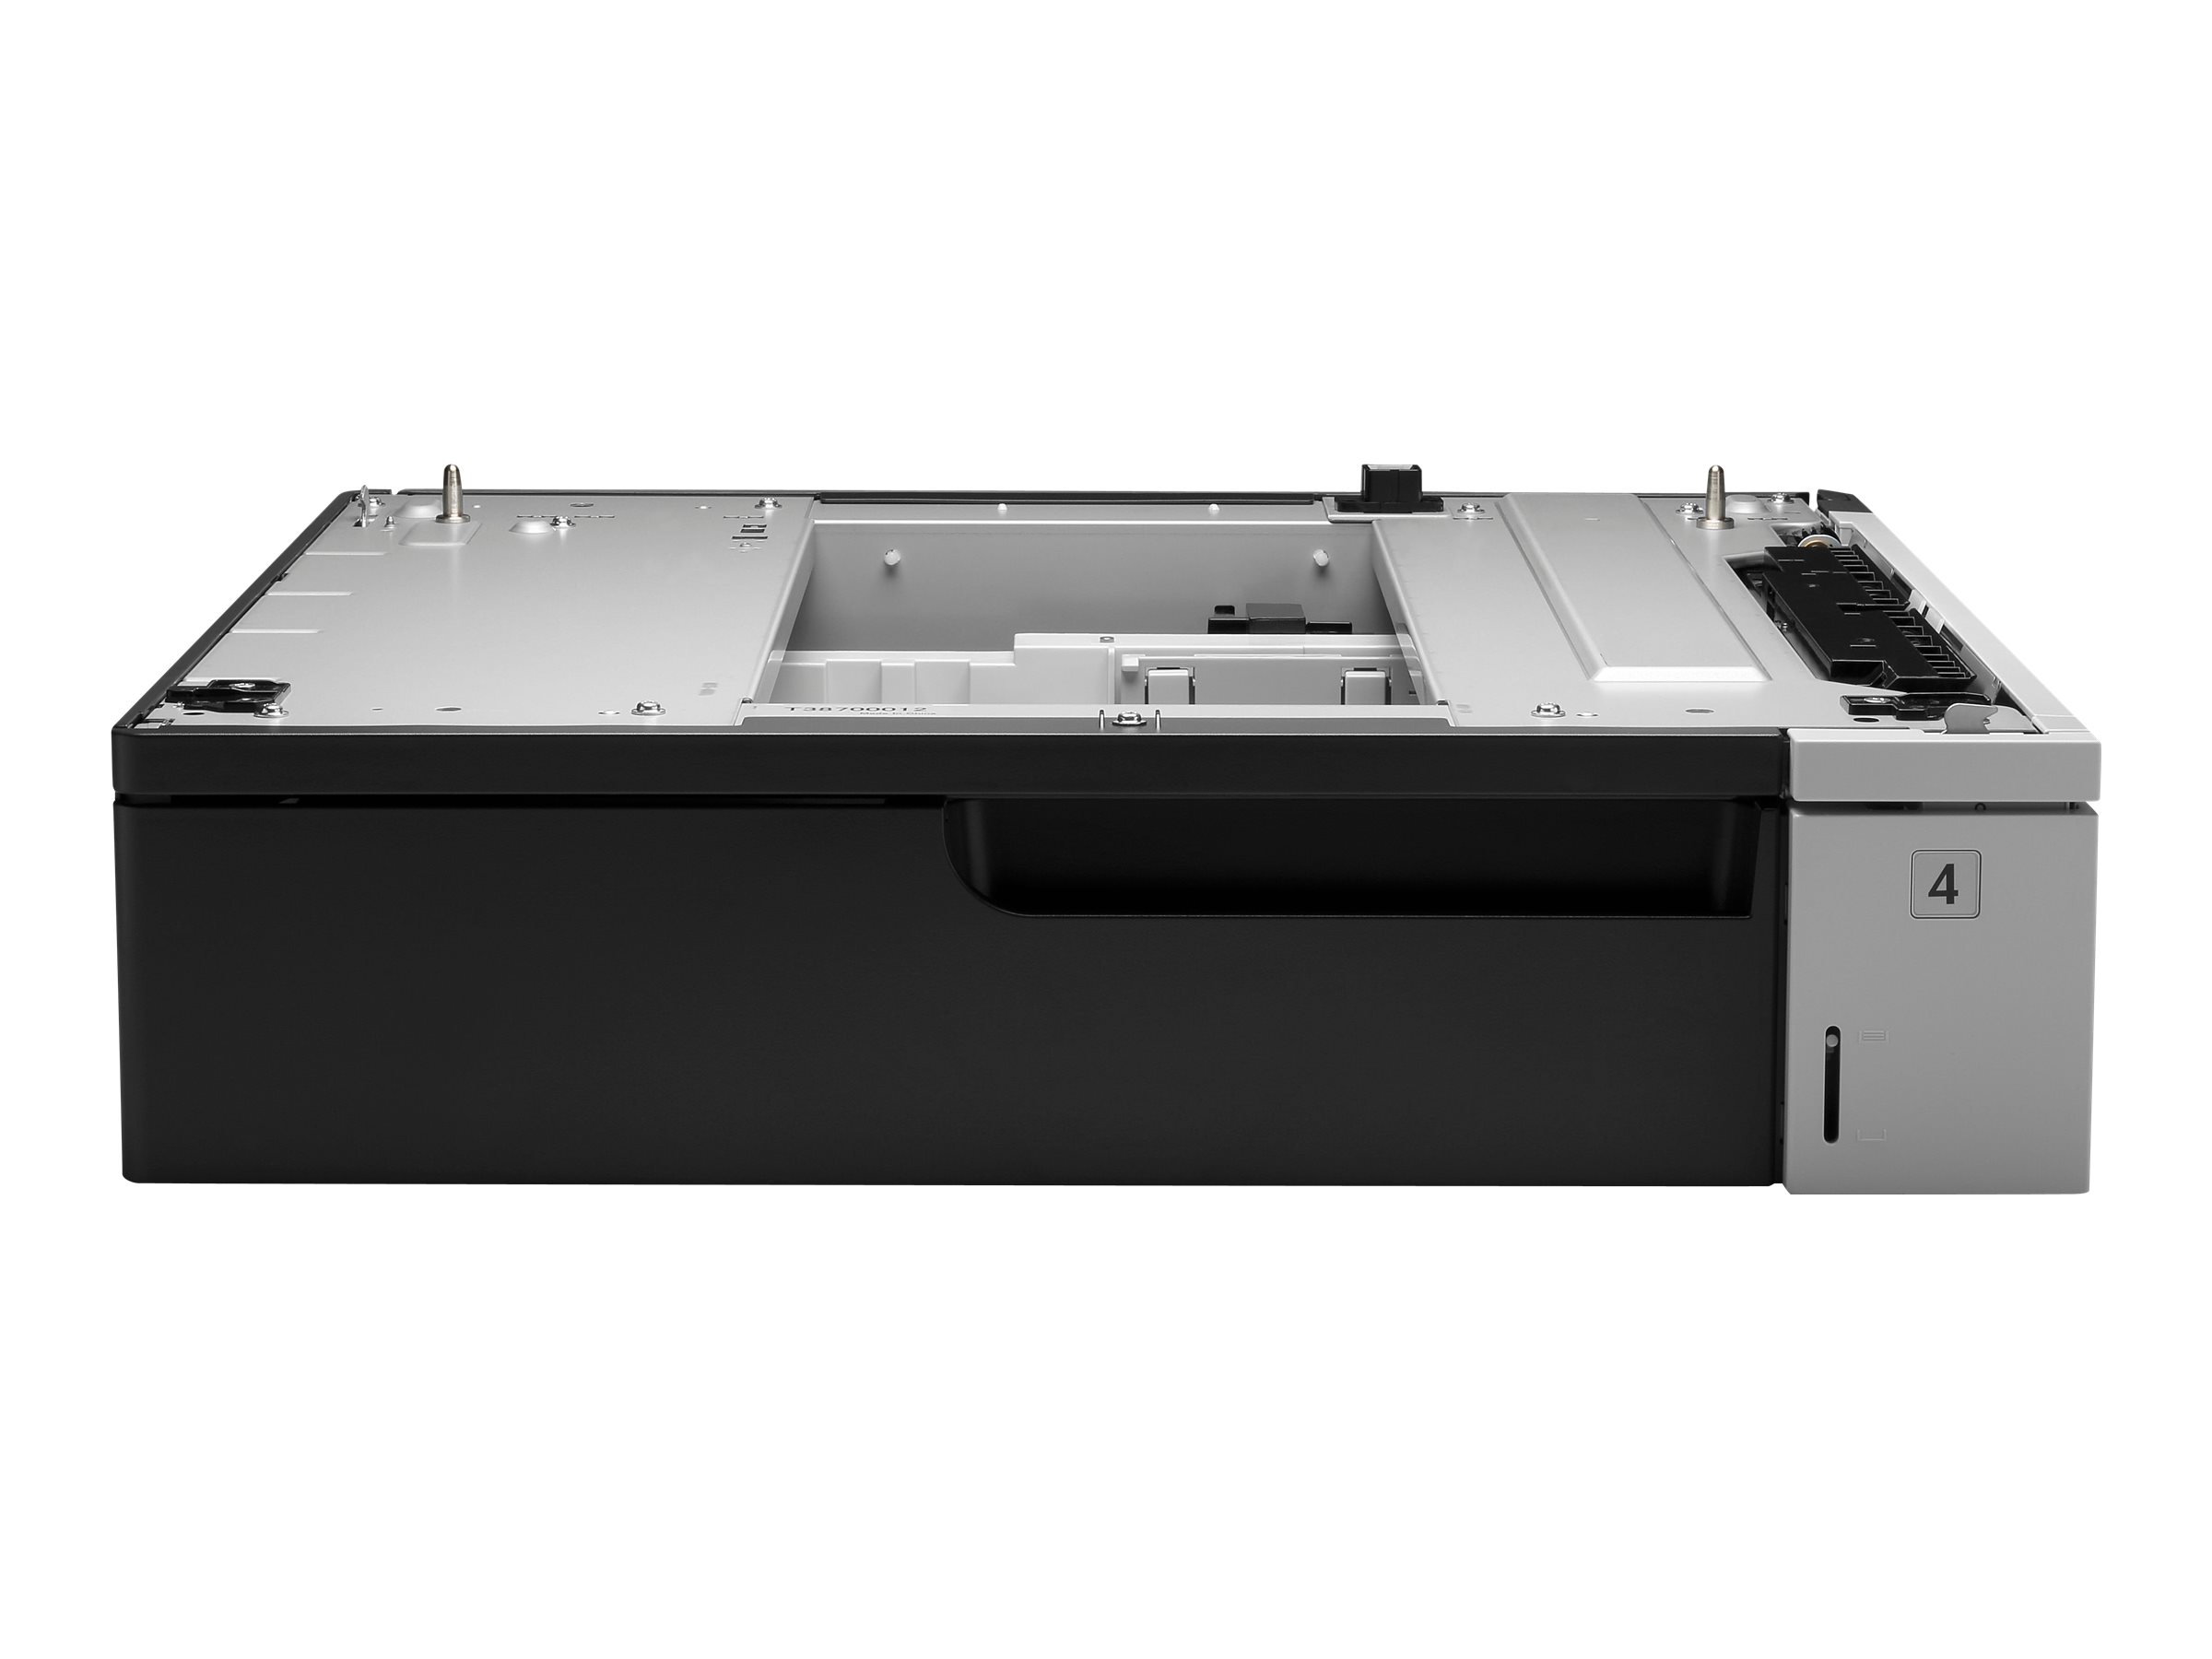 HP - Medienfach / Zufhrung - 500 Bltter in 1 Schubladen (Trays) - fr LaserJet Enterprise 700, MFP M725; LaserJet Managed MFP 